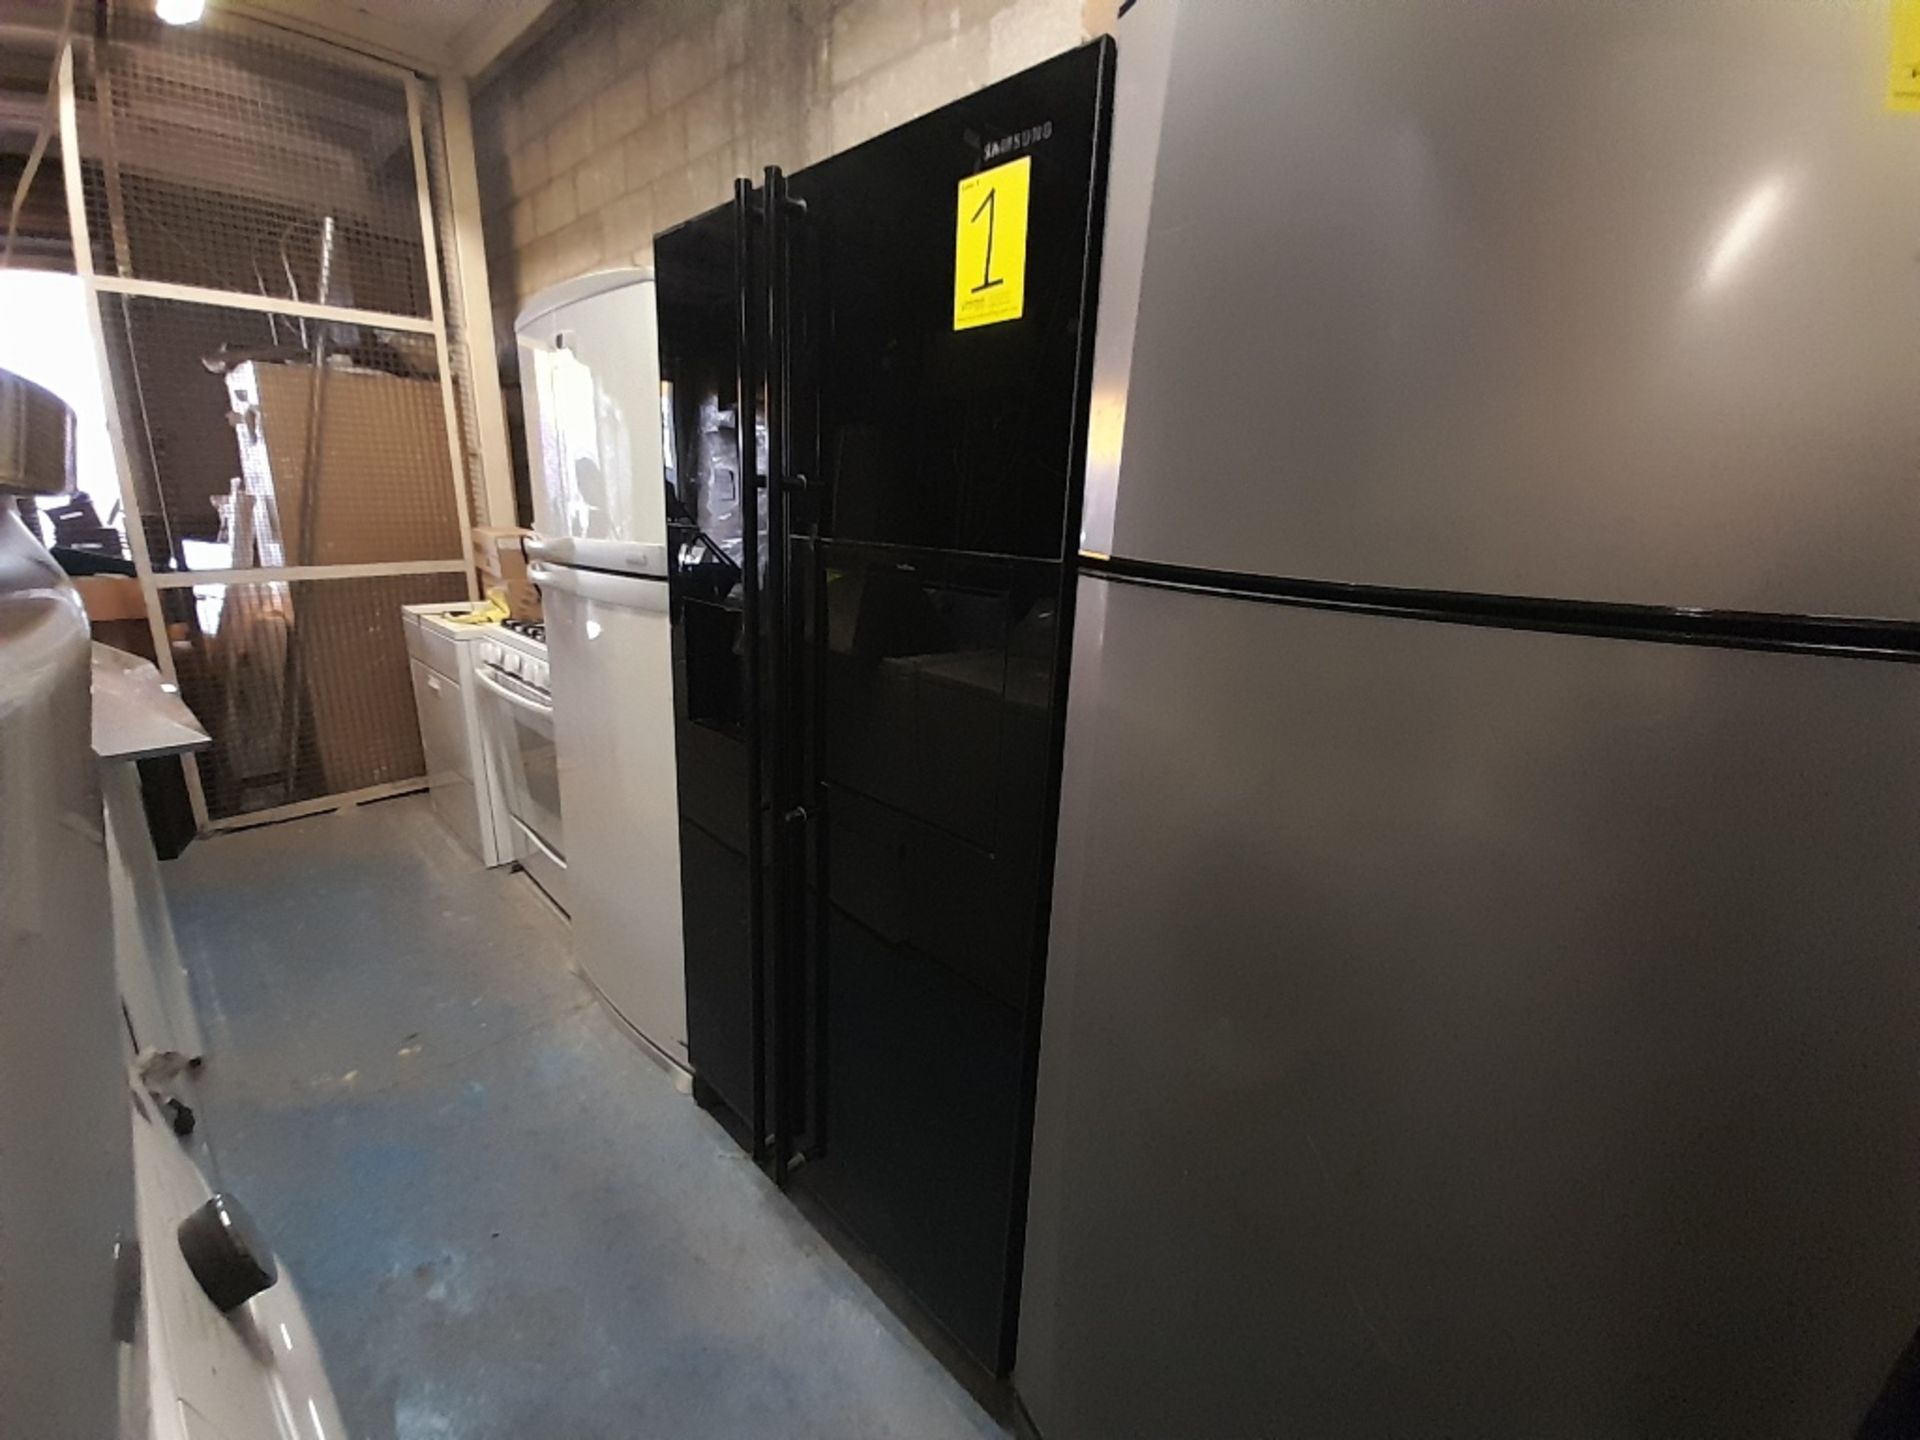 Lote de 1 refrigerador Marca SAMSUNG, de doble puerta Con Dispensador de Agua y Hielos, Color N - Image 3 of 5